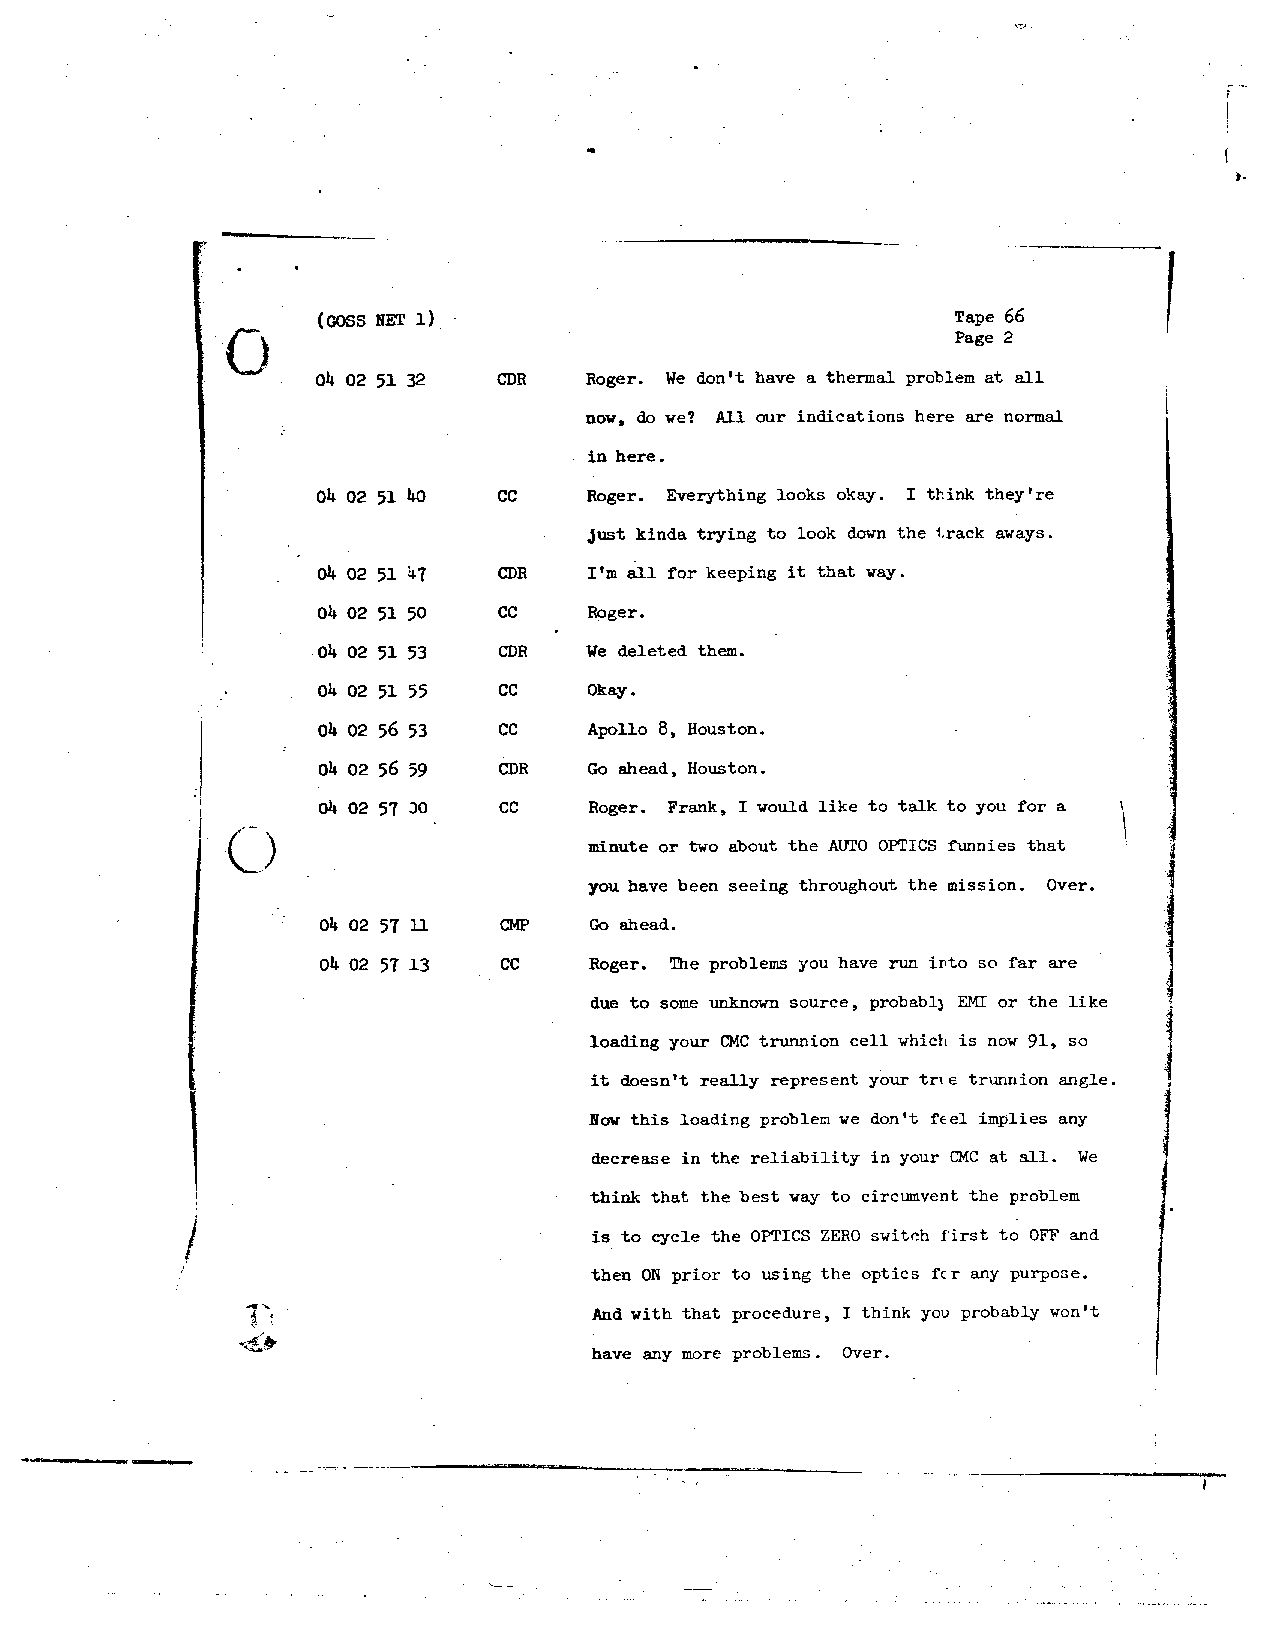 Page 521 of Apollo 8’s original transcript